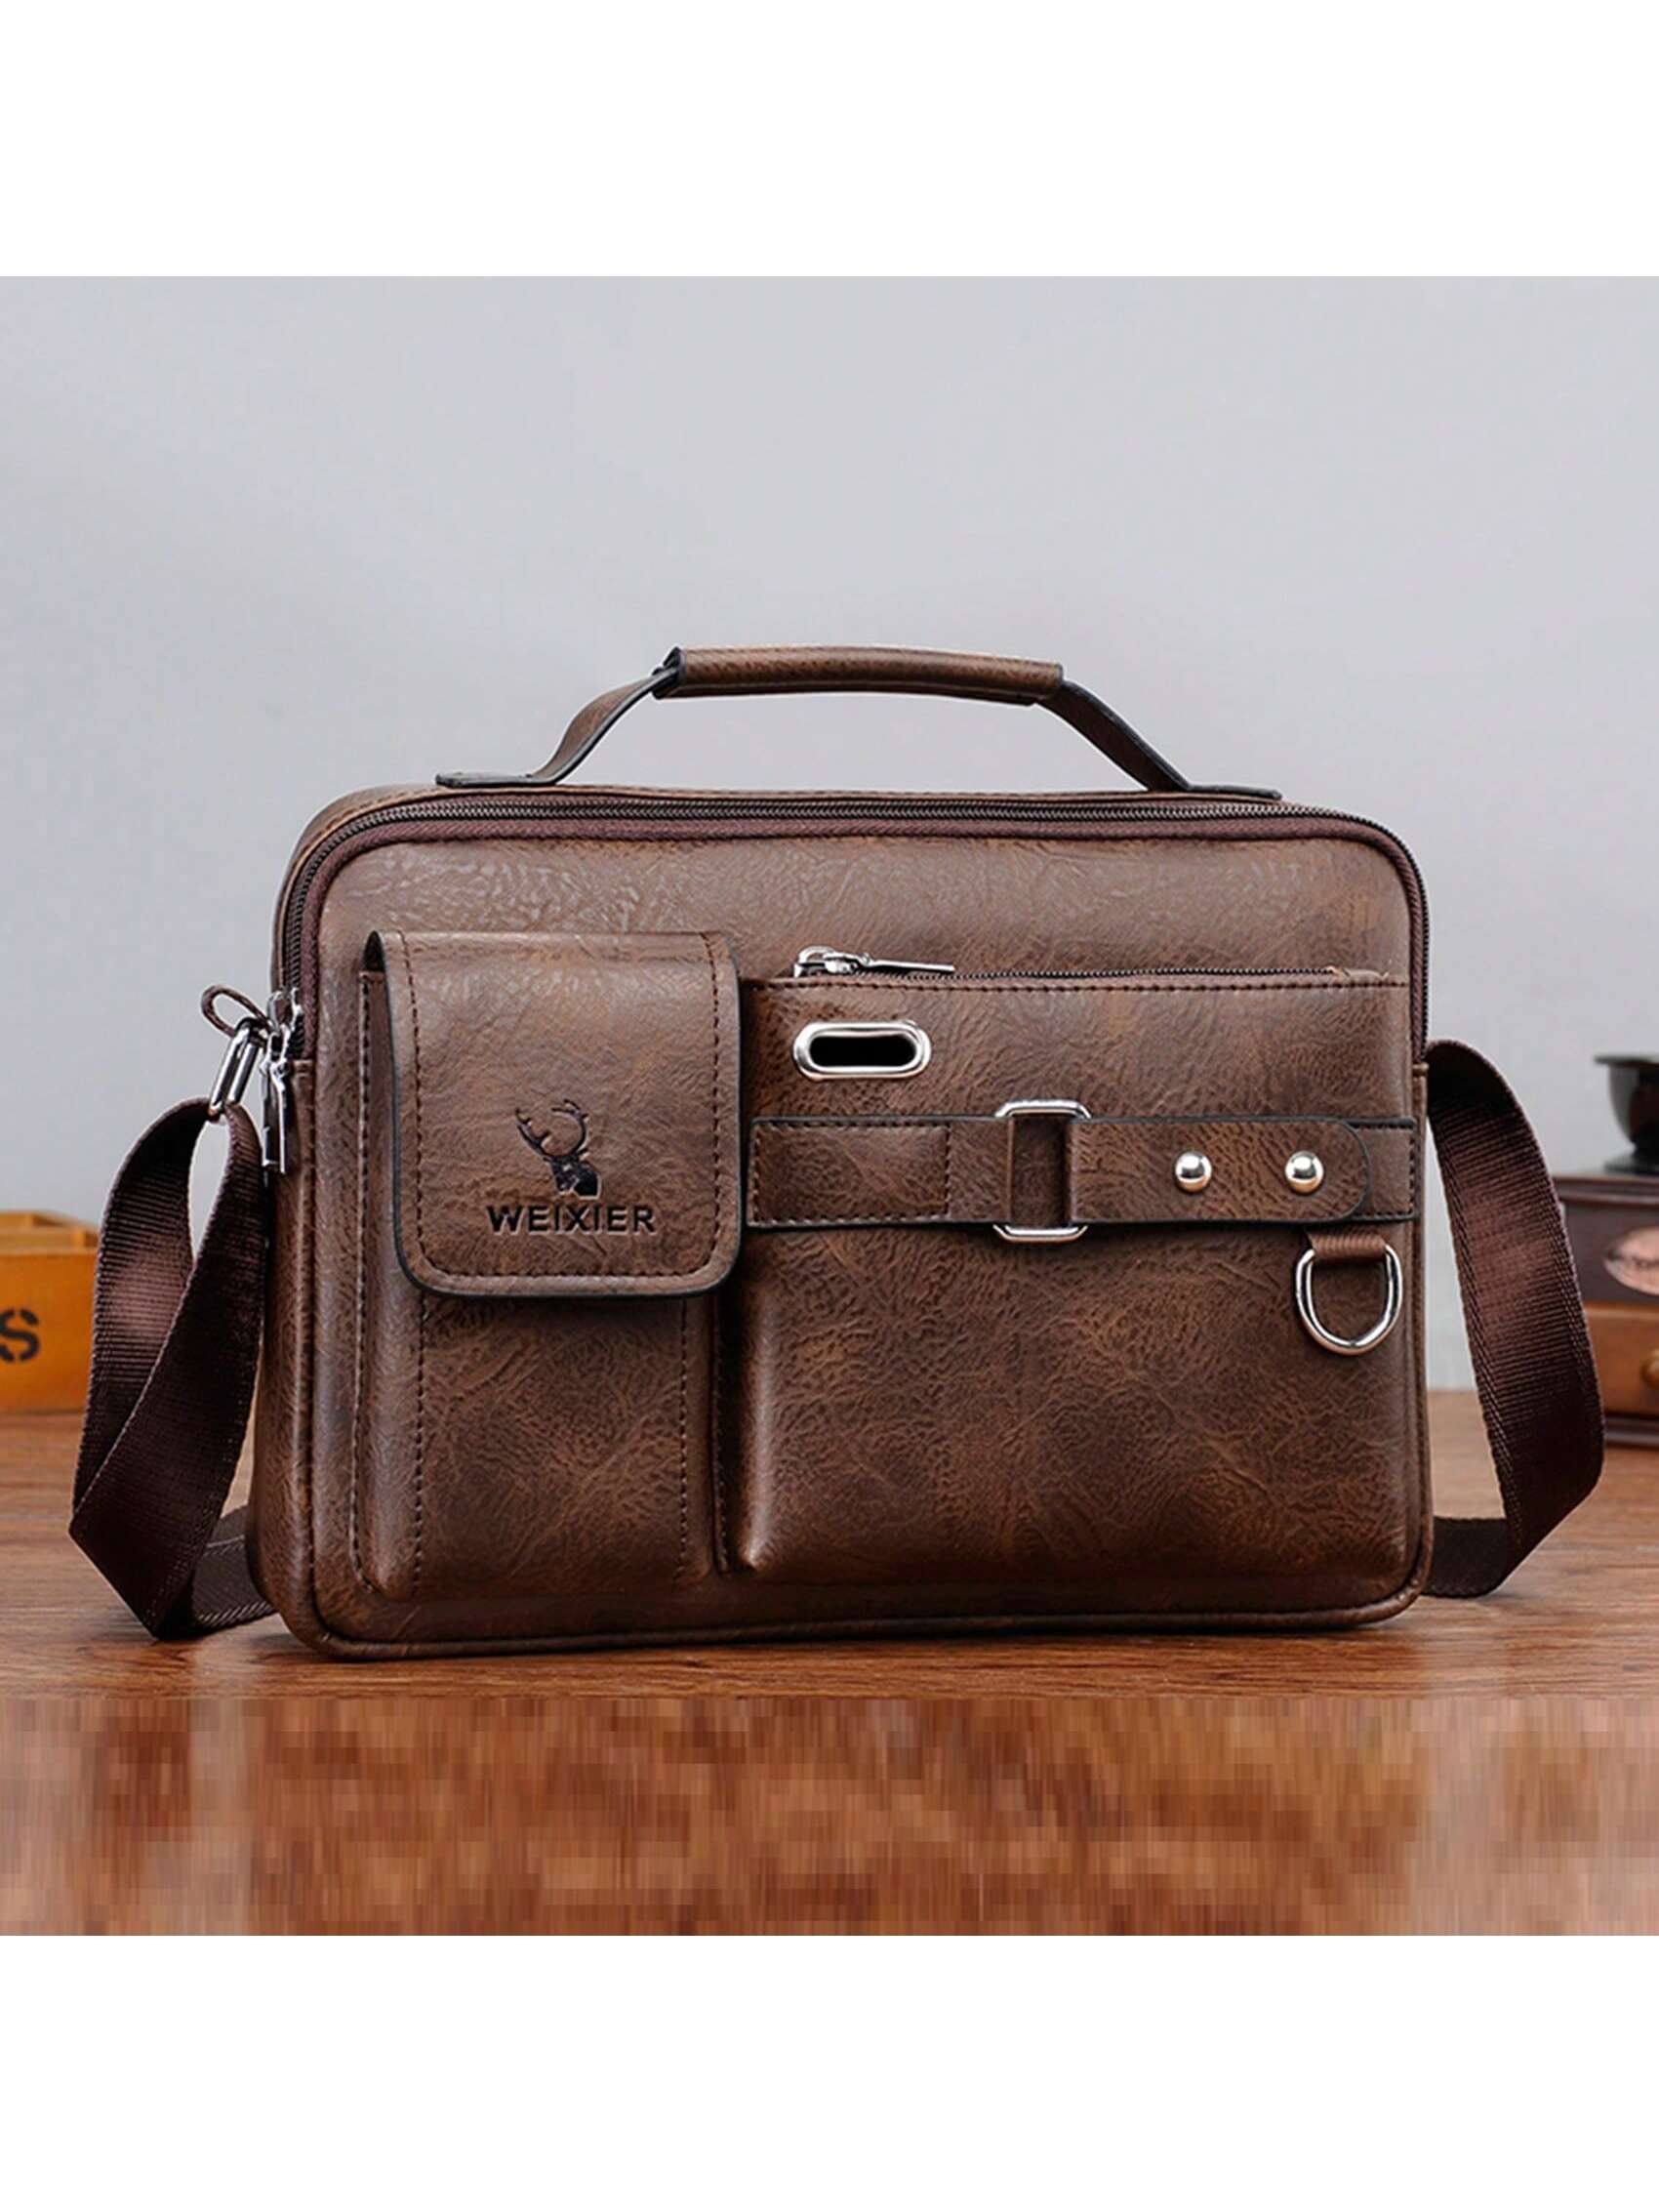 1 шт. сумка на одно плечо/сумка через плечо/деловой портфель/сумка для офиса/рабочего места, мокко браун